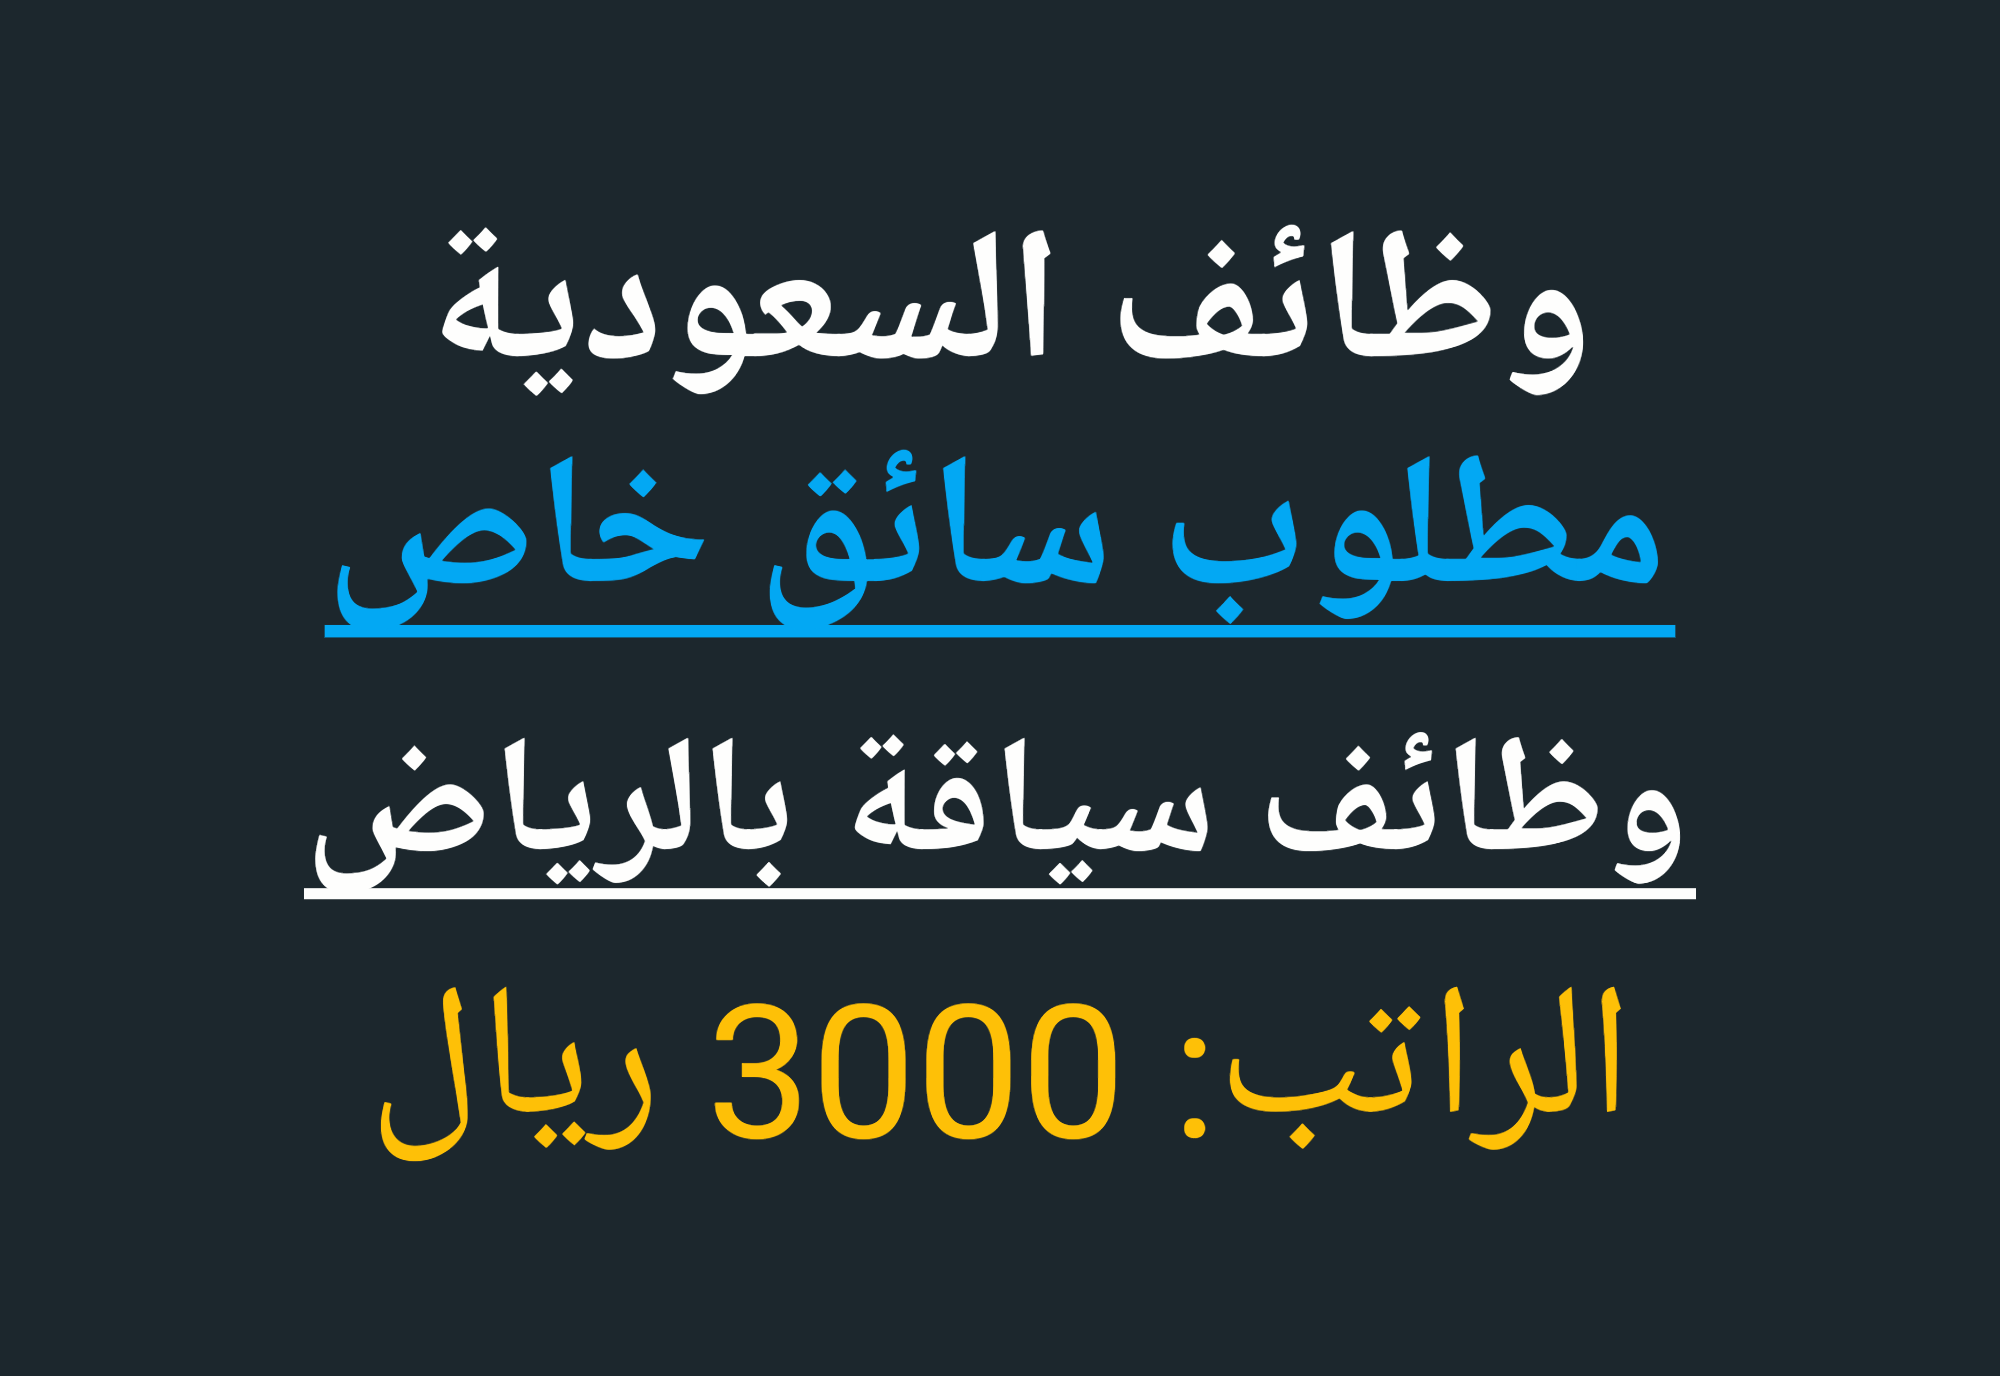 مطلوب سائق خاص للعمل بالسعودية شركة اوسكار لإلحاق العمالة المصرية بالخارج فى السعودية الدمام